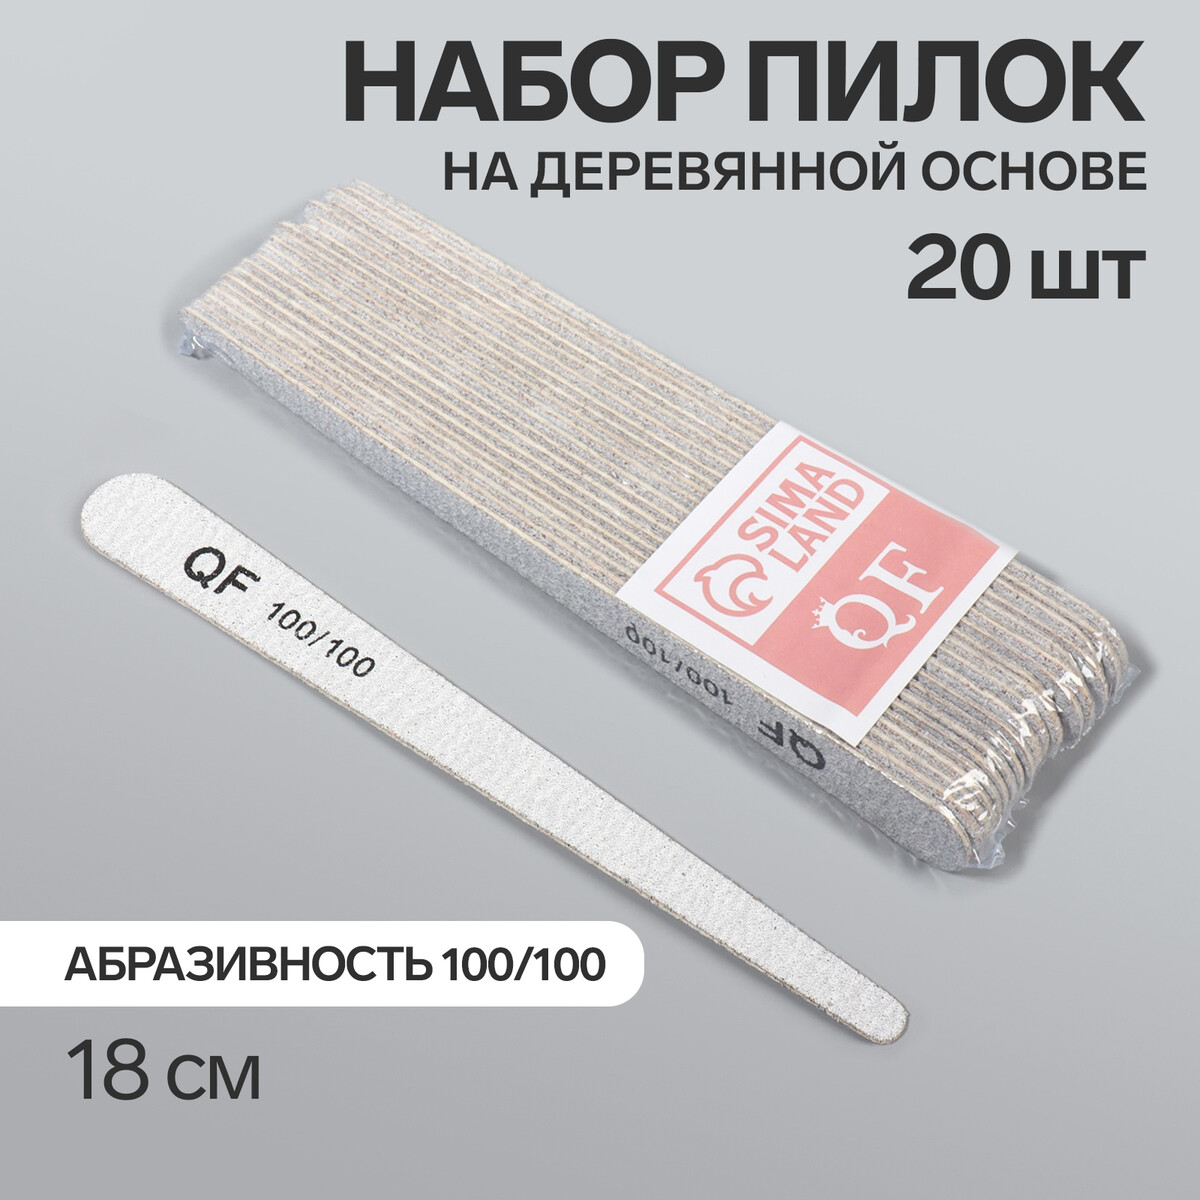 Пилка-наждак, набор 20 шт, деревянная основа, абразивность 100/100, 18 см, цвет серый палка основа для макраме деревянная без покрытия d 1 × 50 см